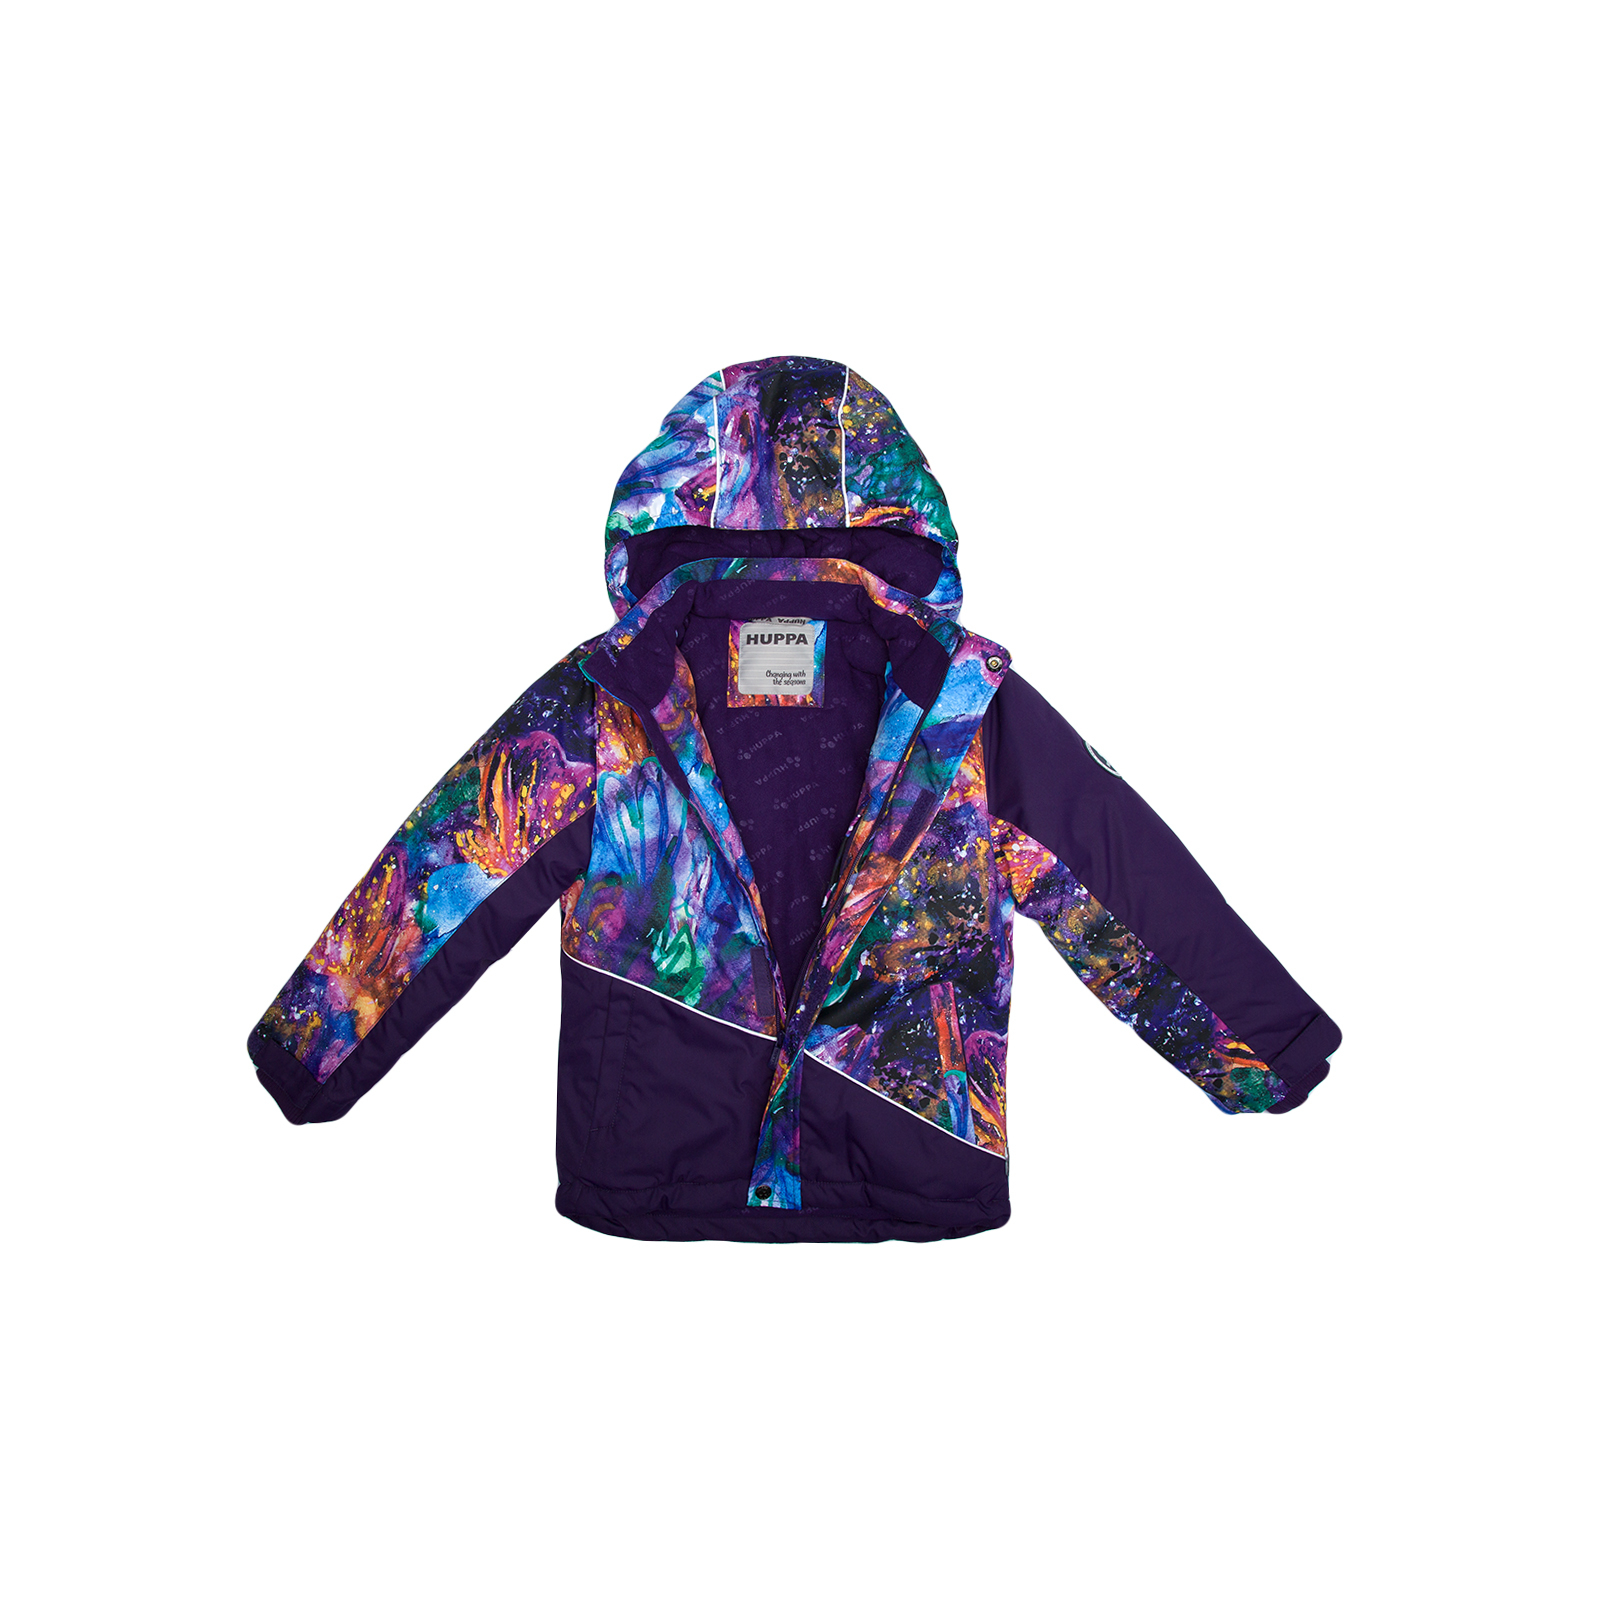 Куртка Huppa ALEX 1 17800130 пурпур с принтом/тёмно-лилoвый 134 (4741468986999) изображение 3